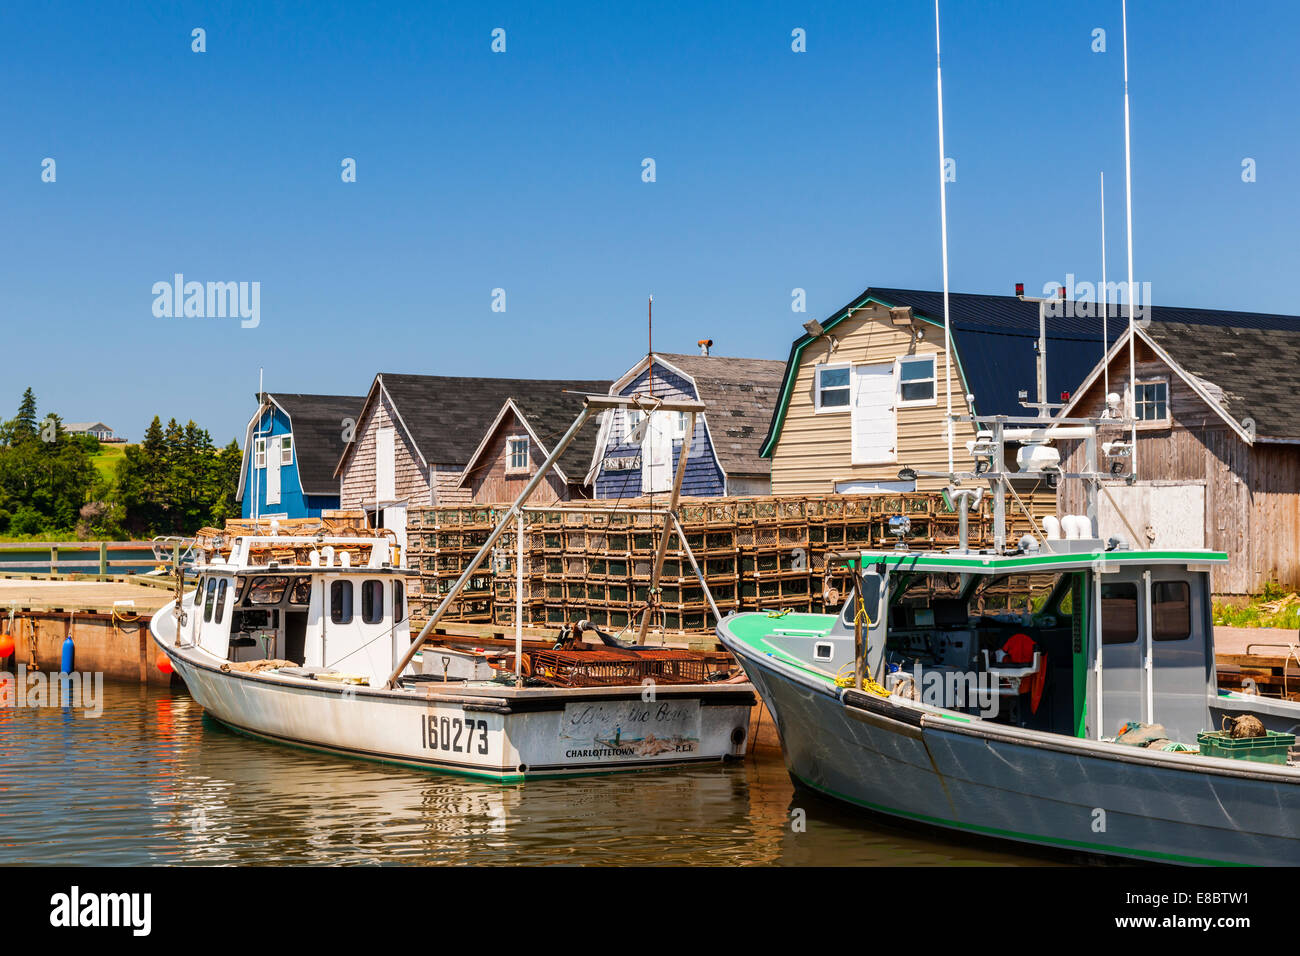 CAVENDISH, Ile du Prince-Édouard, Canada - le 15 juillet 2013 : les bateaux de pêche amarrés près des casiers à homard affiché le 15 juillet 2013 Banque D'Images